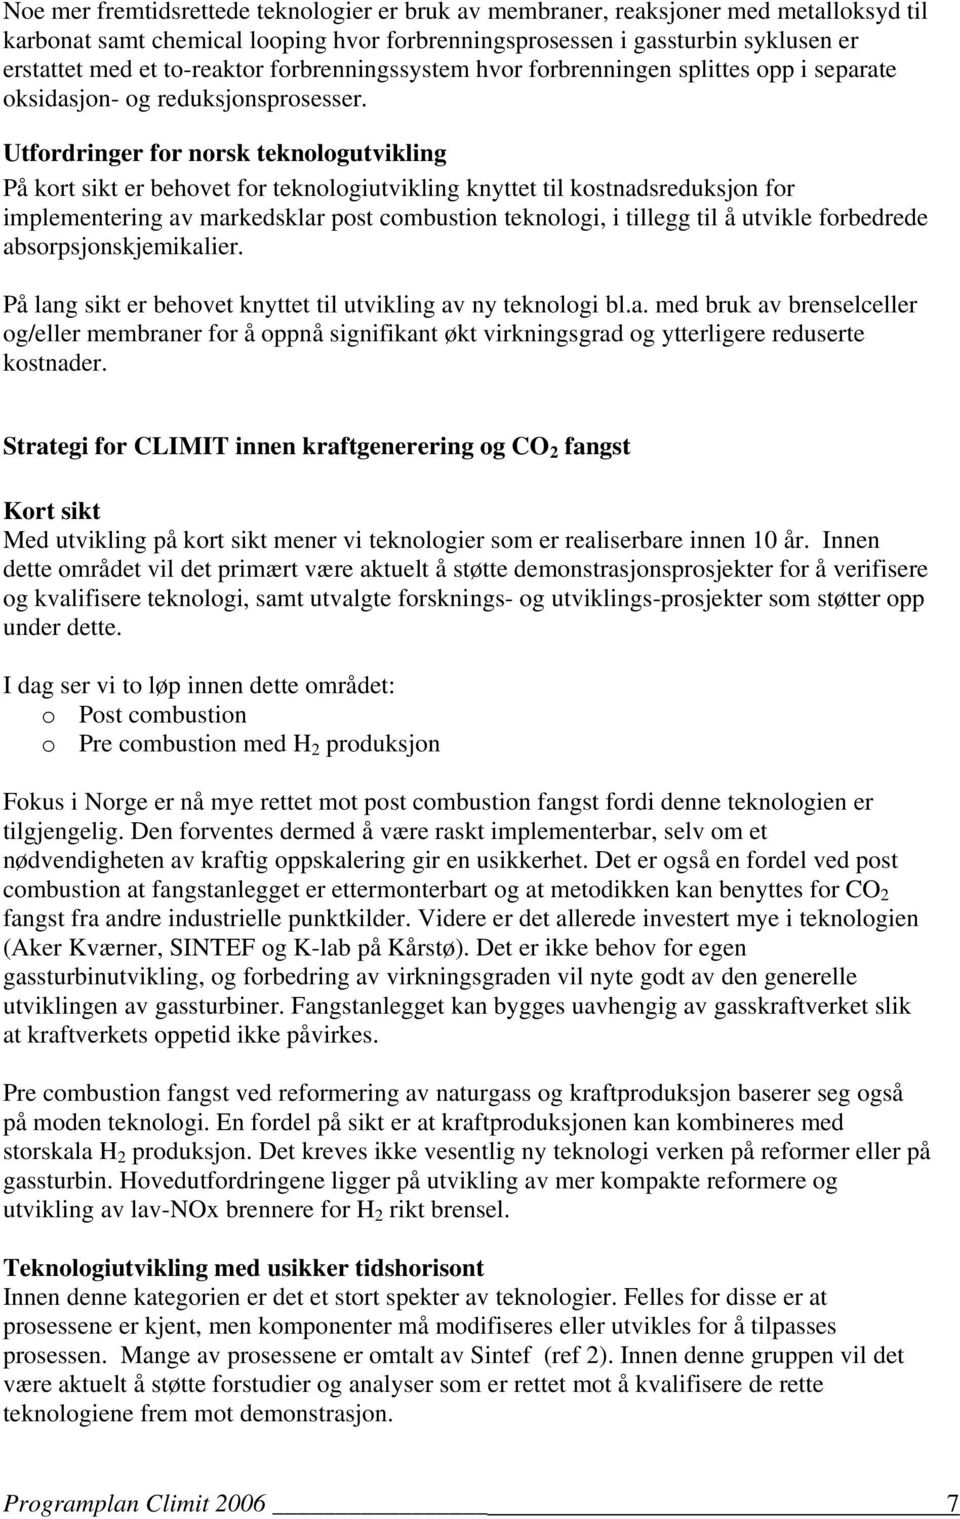 Utfordringer for norsk teknologutvikling På kort sikt er behovet for teknologiutvikling knyttet til kostnadsreduksjon for implementering av markedsklar post combustion teknologi, i tillegg til å